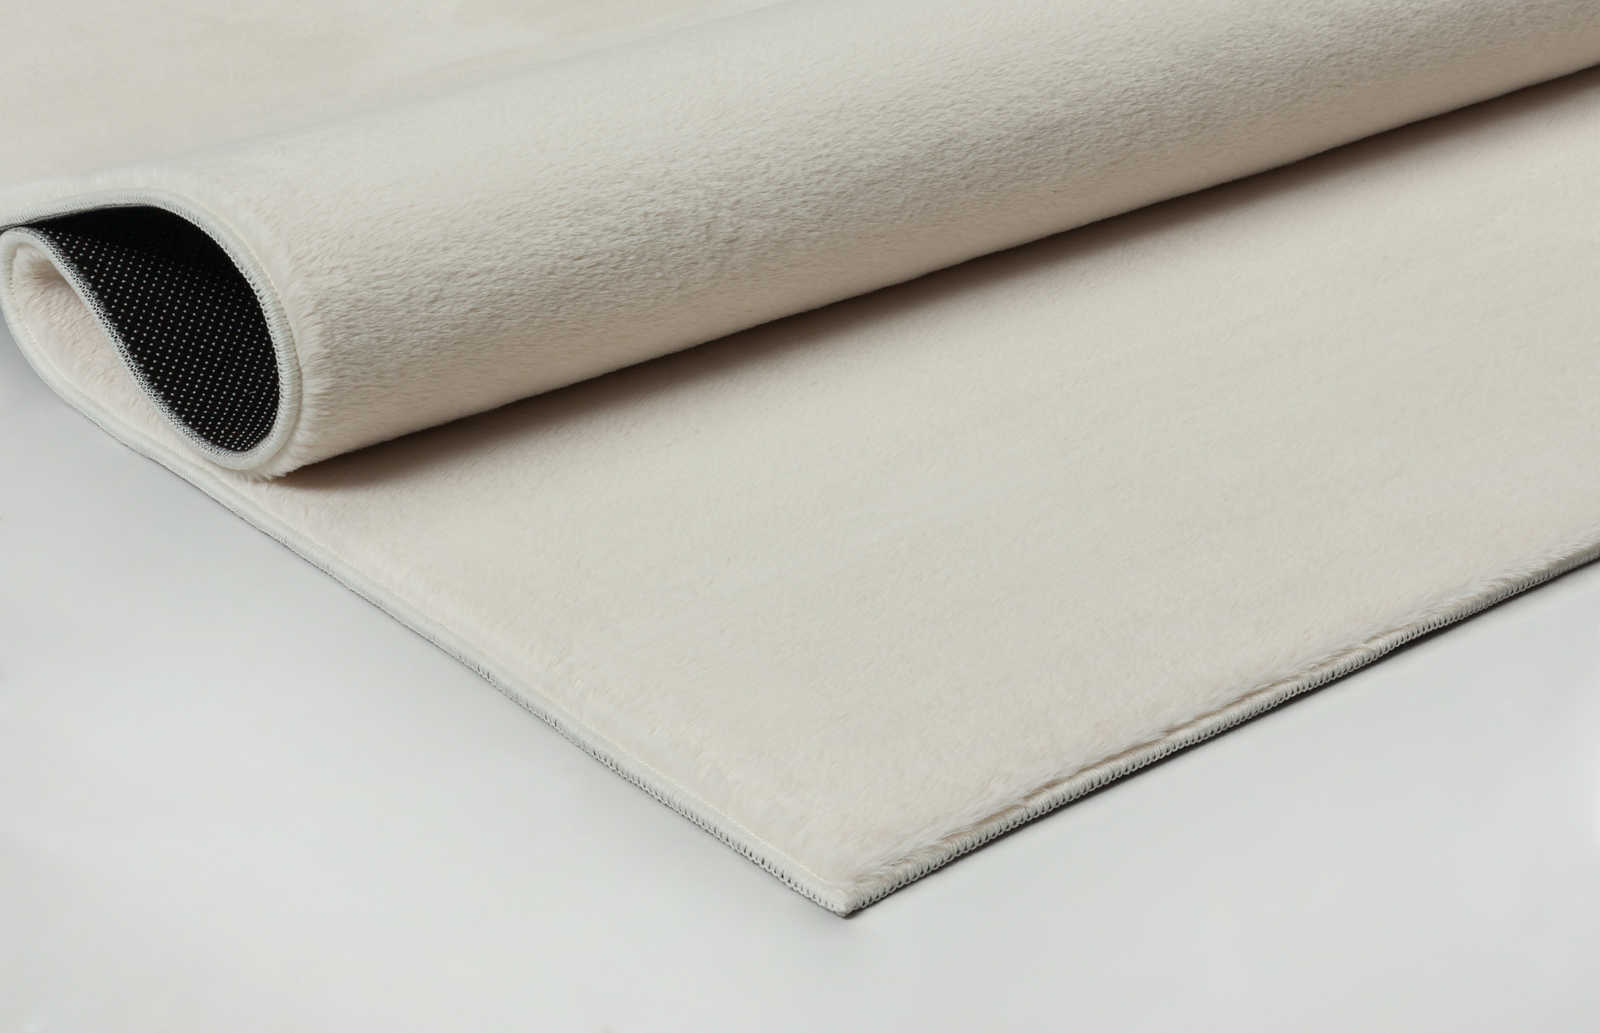             Zachtpolig tapijt in crème - 100 x 50 cm
        